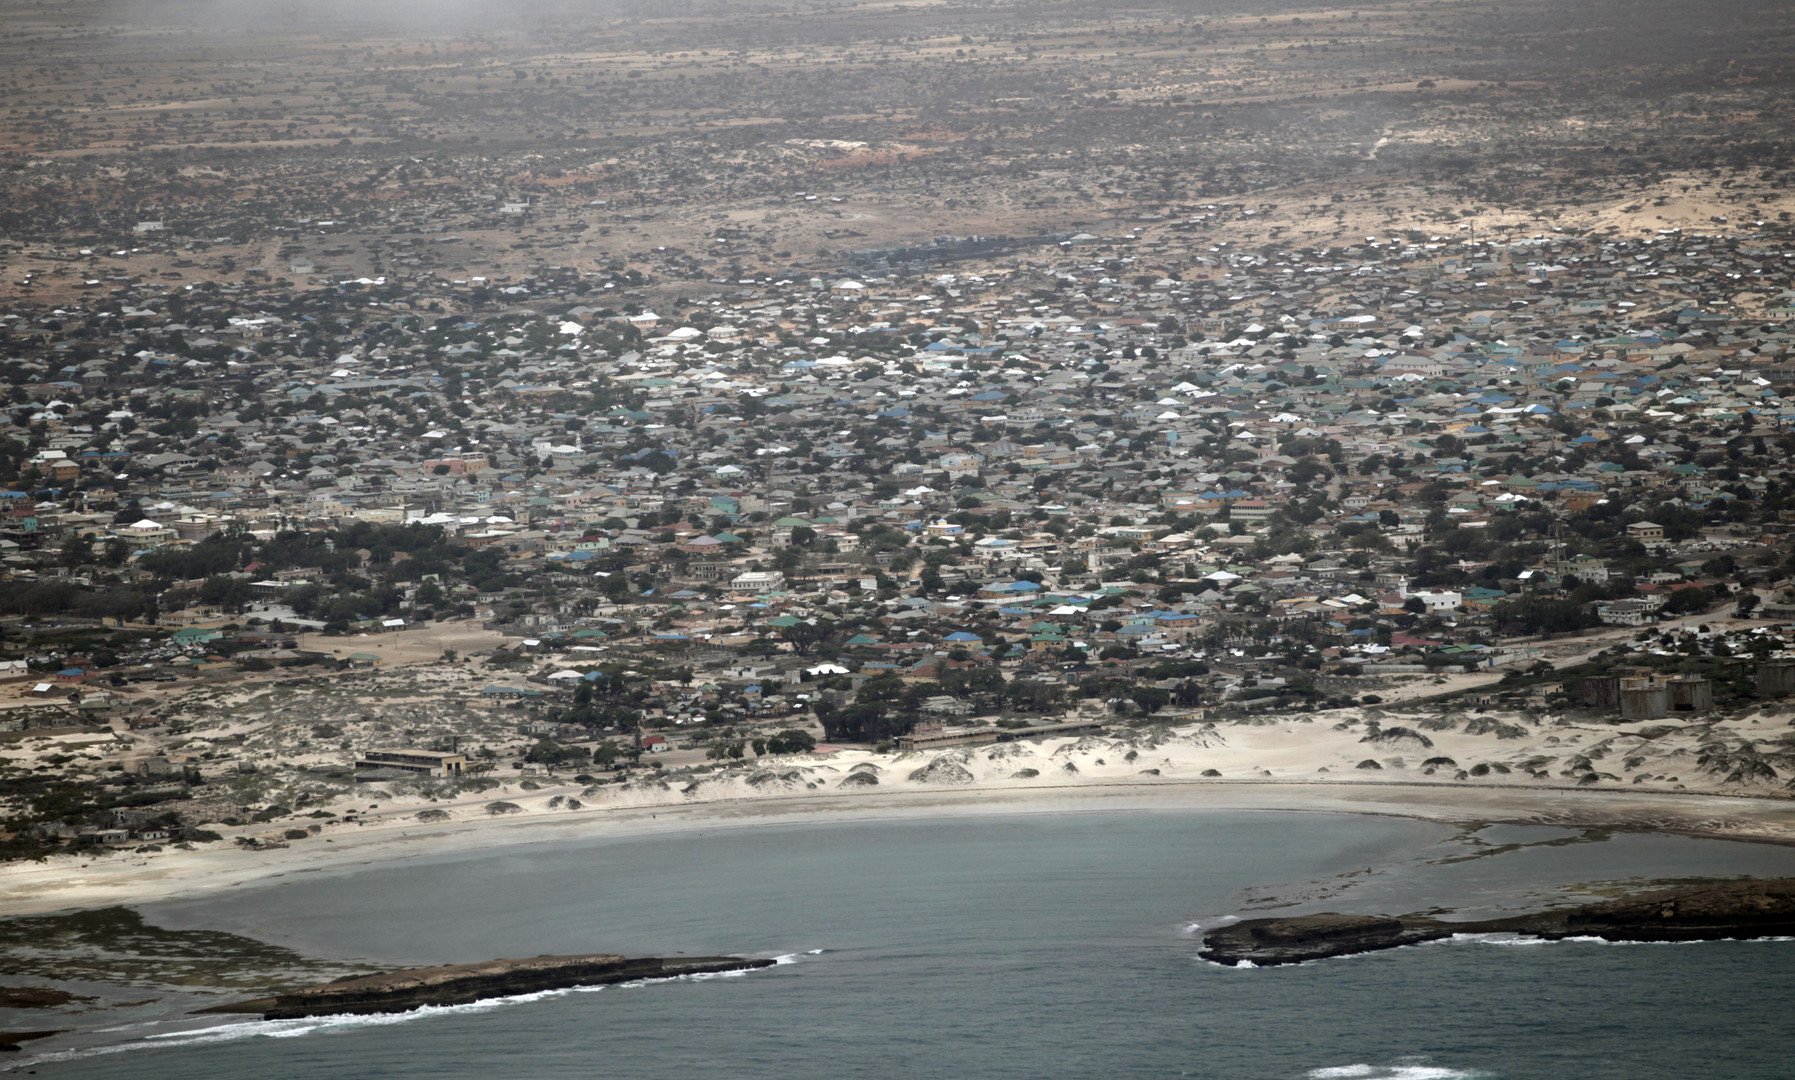 وكالة: 10 قتلى جراء تفجير وهجوم استهدفا فندقا في الصومال.. و